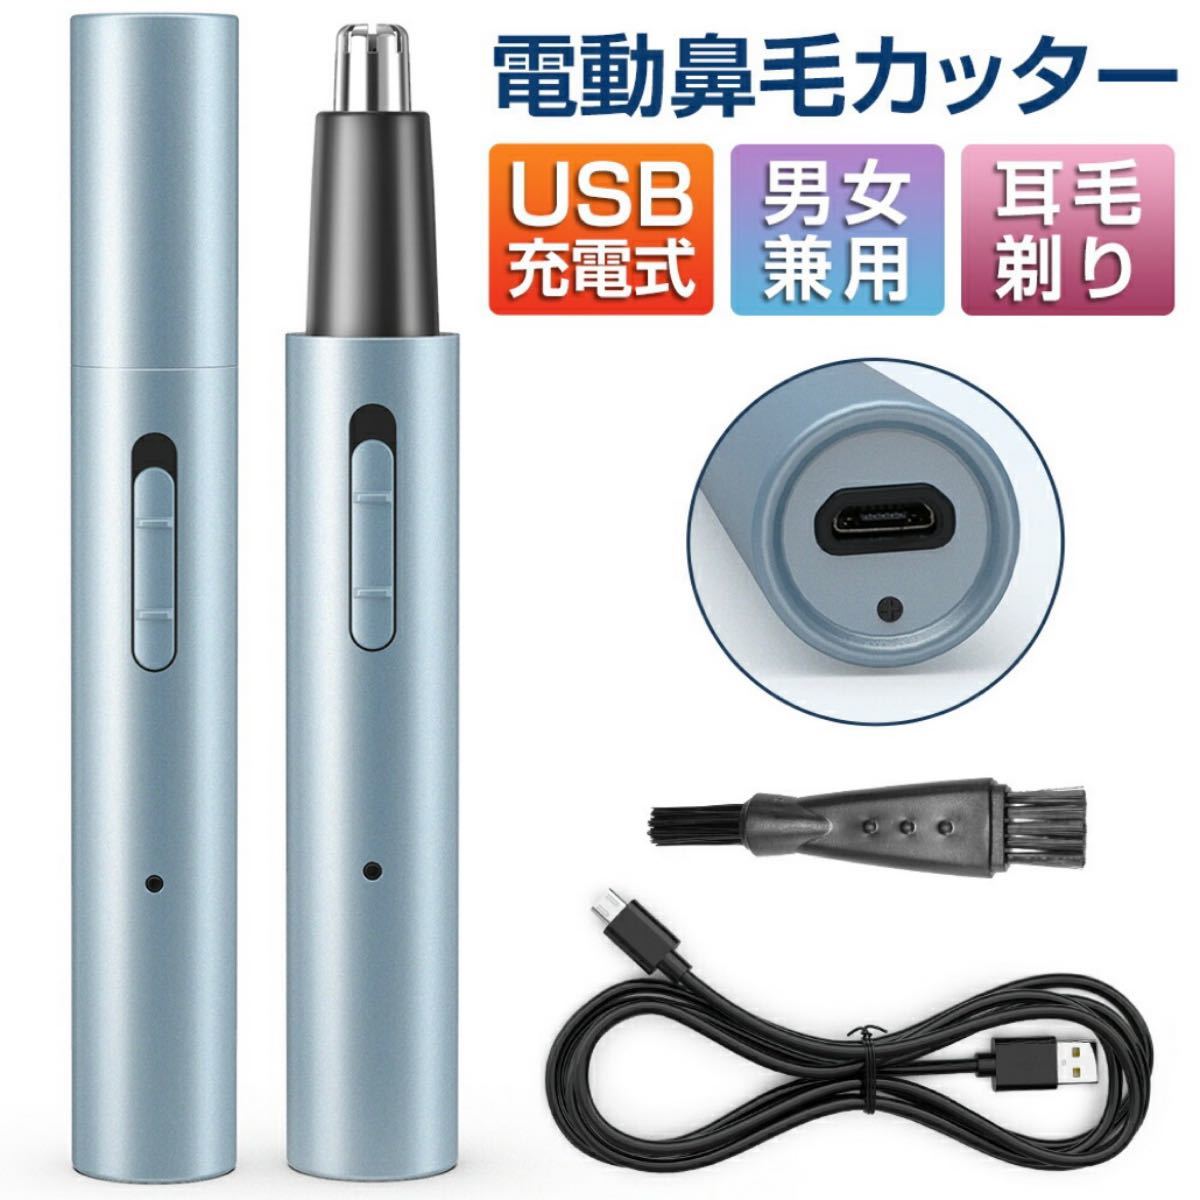 【新品未使用】鼻毛カッター 耳毛カッター USB充電式  電動式カッター 